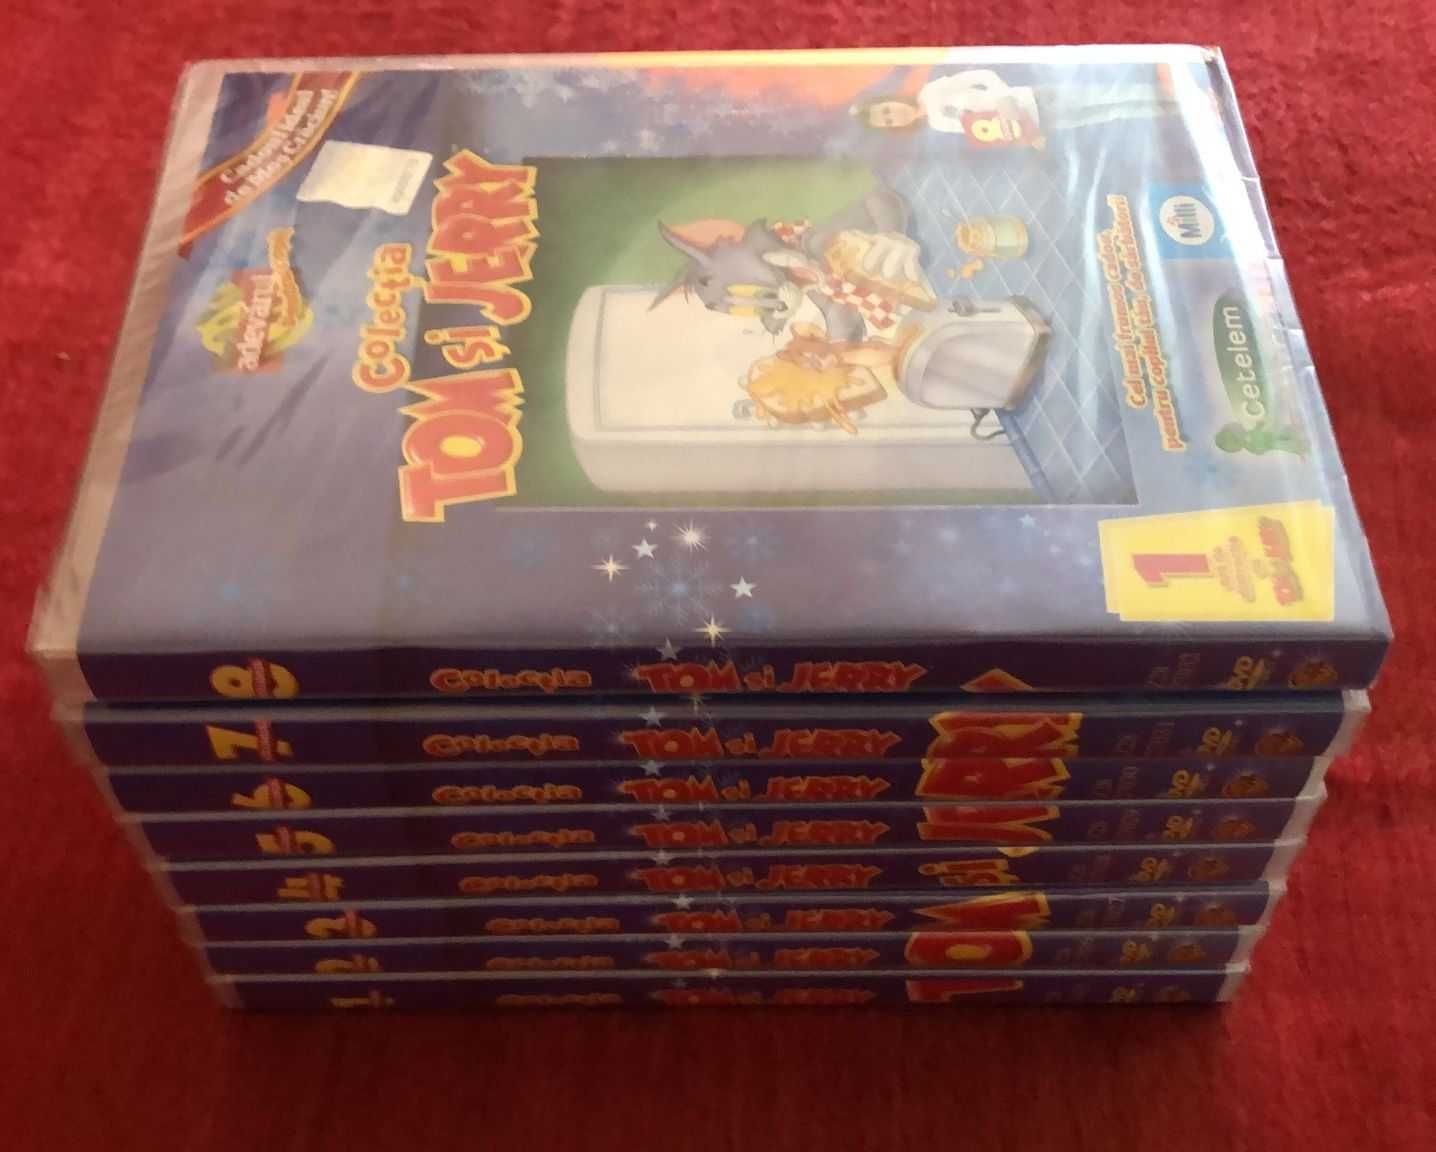 Colecție DVD Tom & Jerry de la ziarul Adevărul